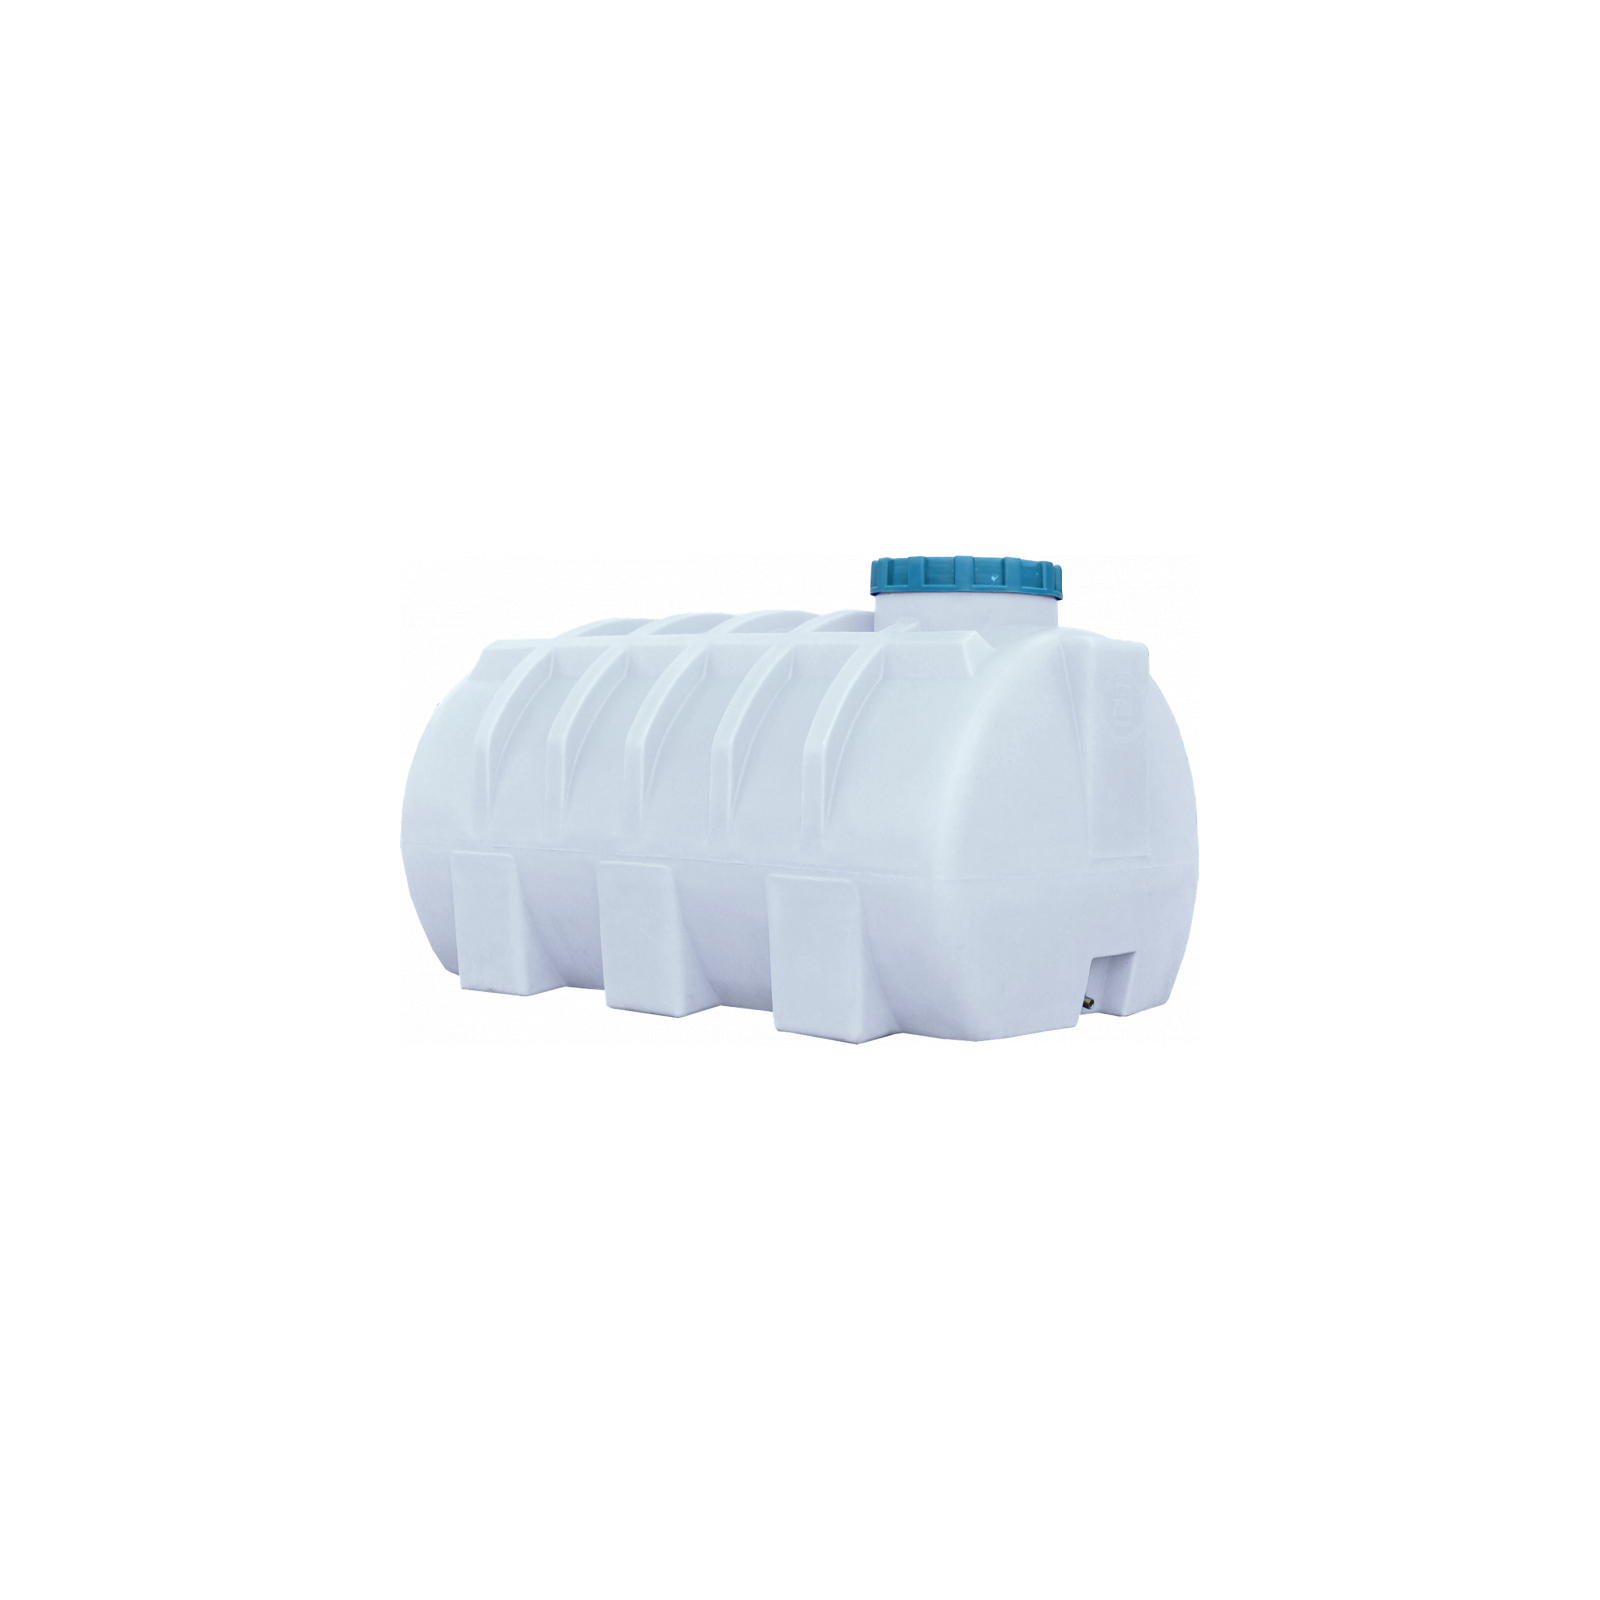 Емкость для воды Пласт Бак горизонтальная пищевая 250 л белая (763)